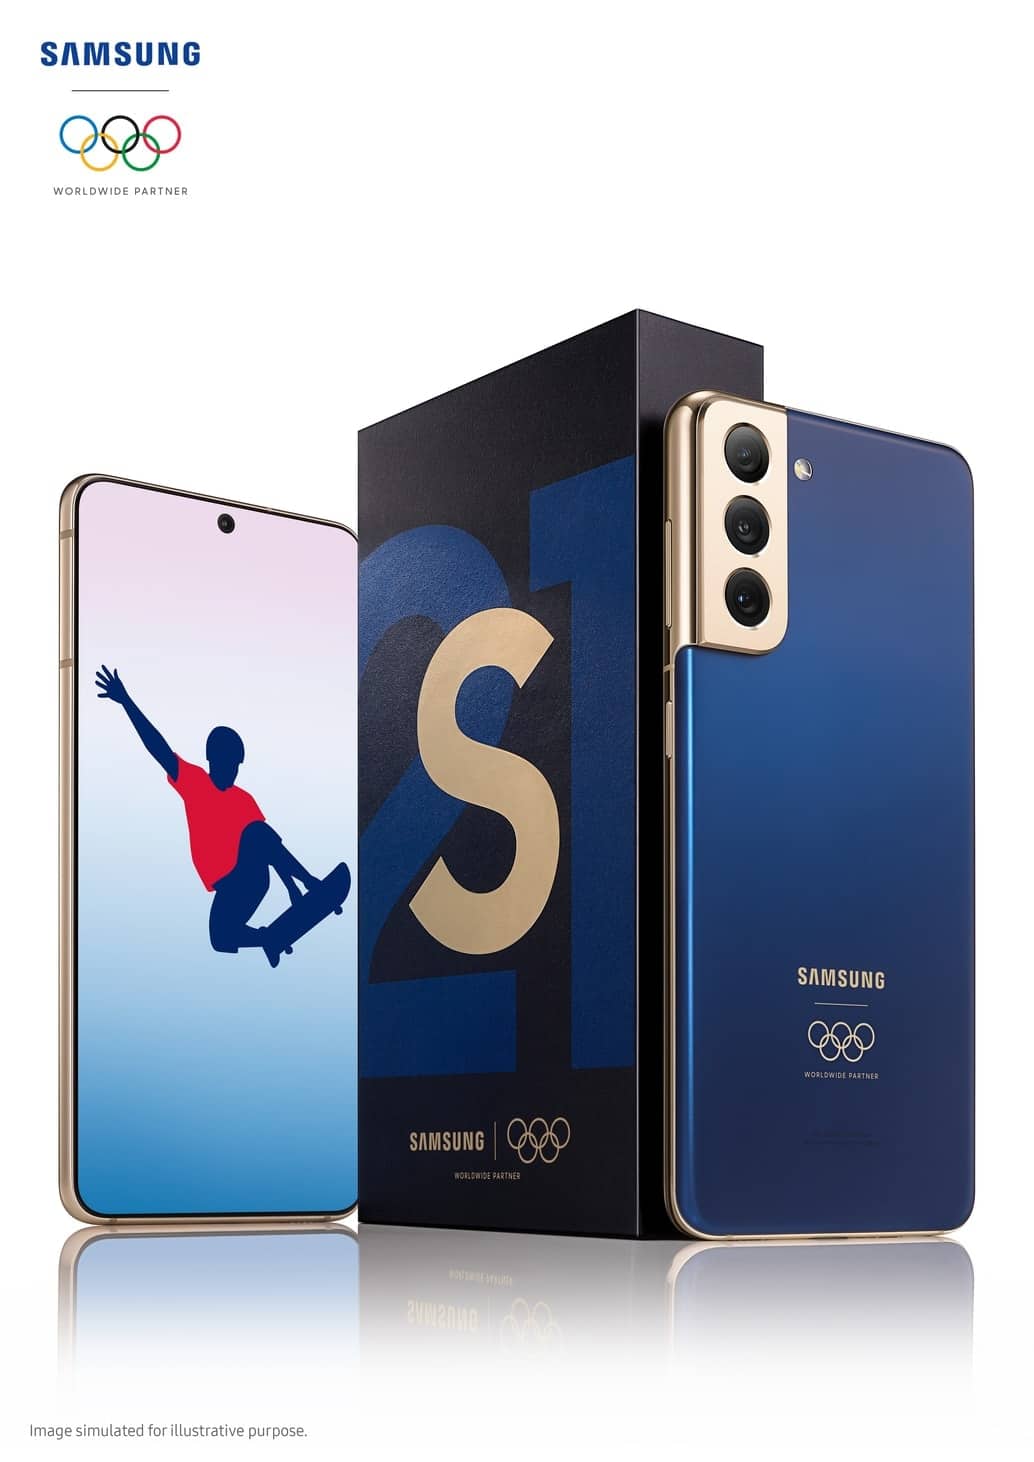 ซัมซุงร่วมสนับสนุนการแข่งขัน “โอลิมปิก โตเกียว 2020” เปิดตัวสมาร์ทโฟน S21 5G รุ่นพิเศษ พร้อมมอบให้ทัพนักกีฬาที่เข้าร่วมการแข่งขัน 1